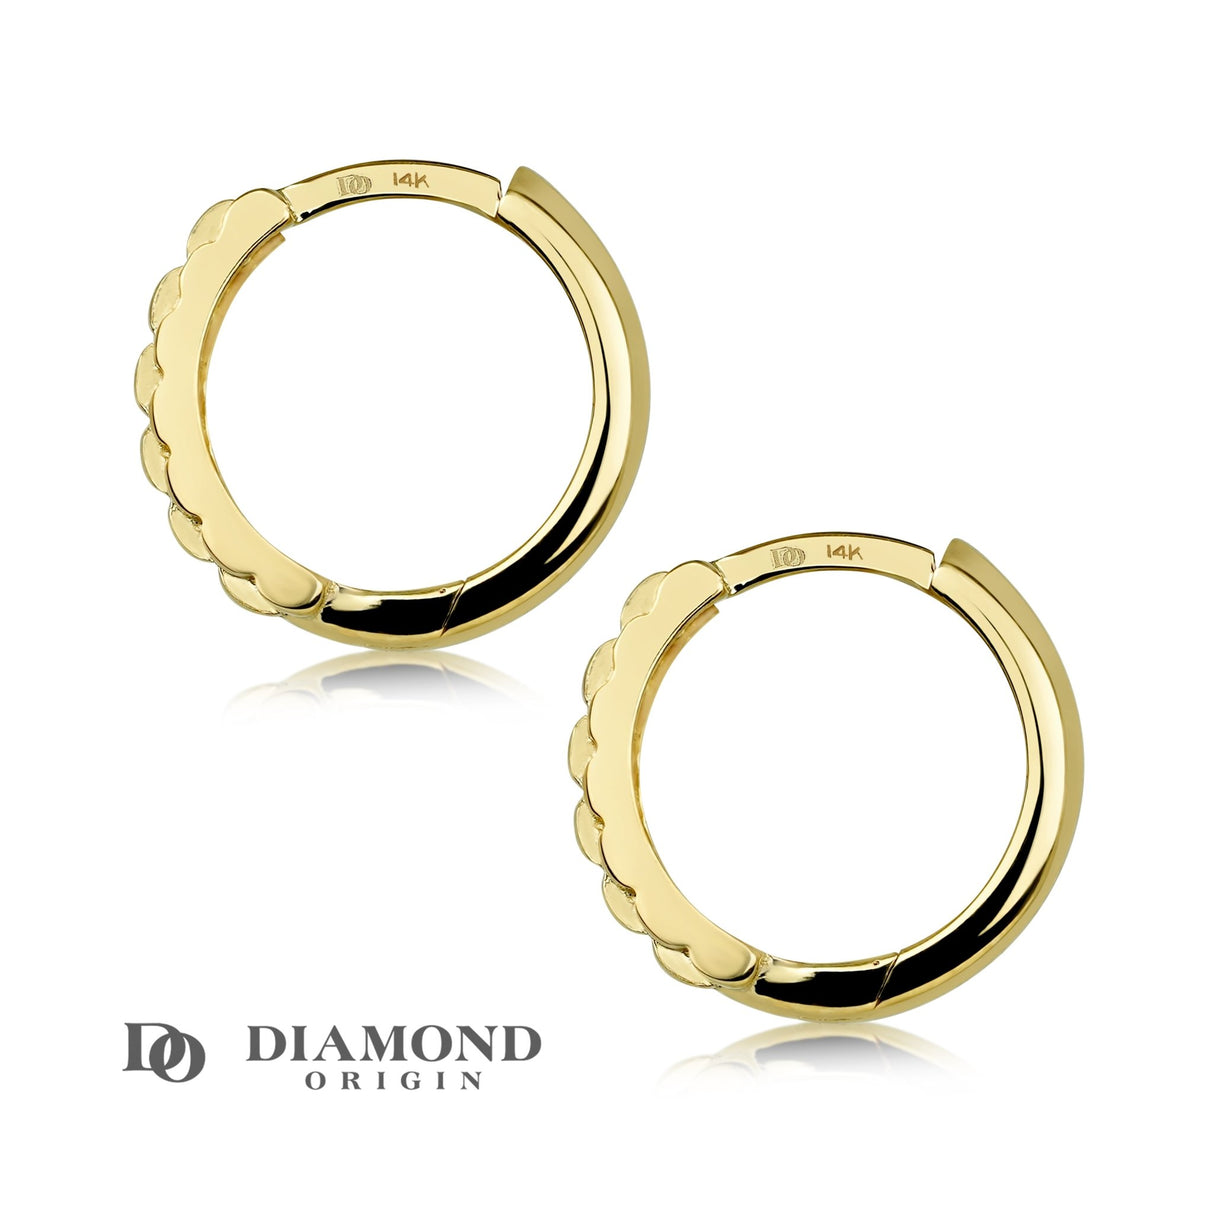 14K Solid Gold Square Basket Weave Huggie Earrings, Hoop Earrings - Diamond Origin